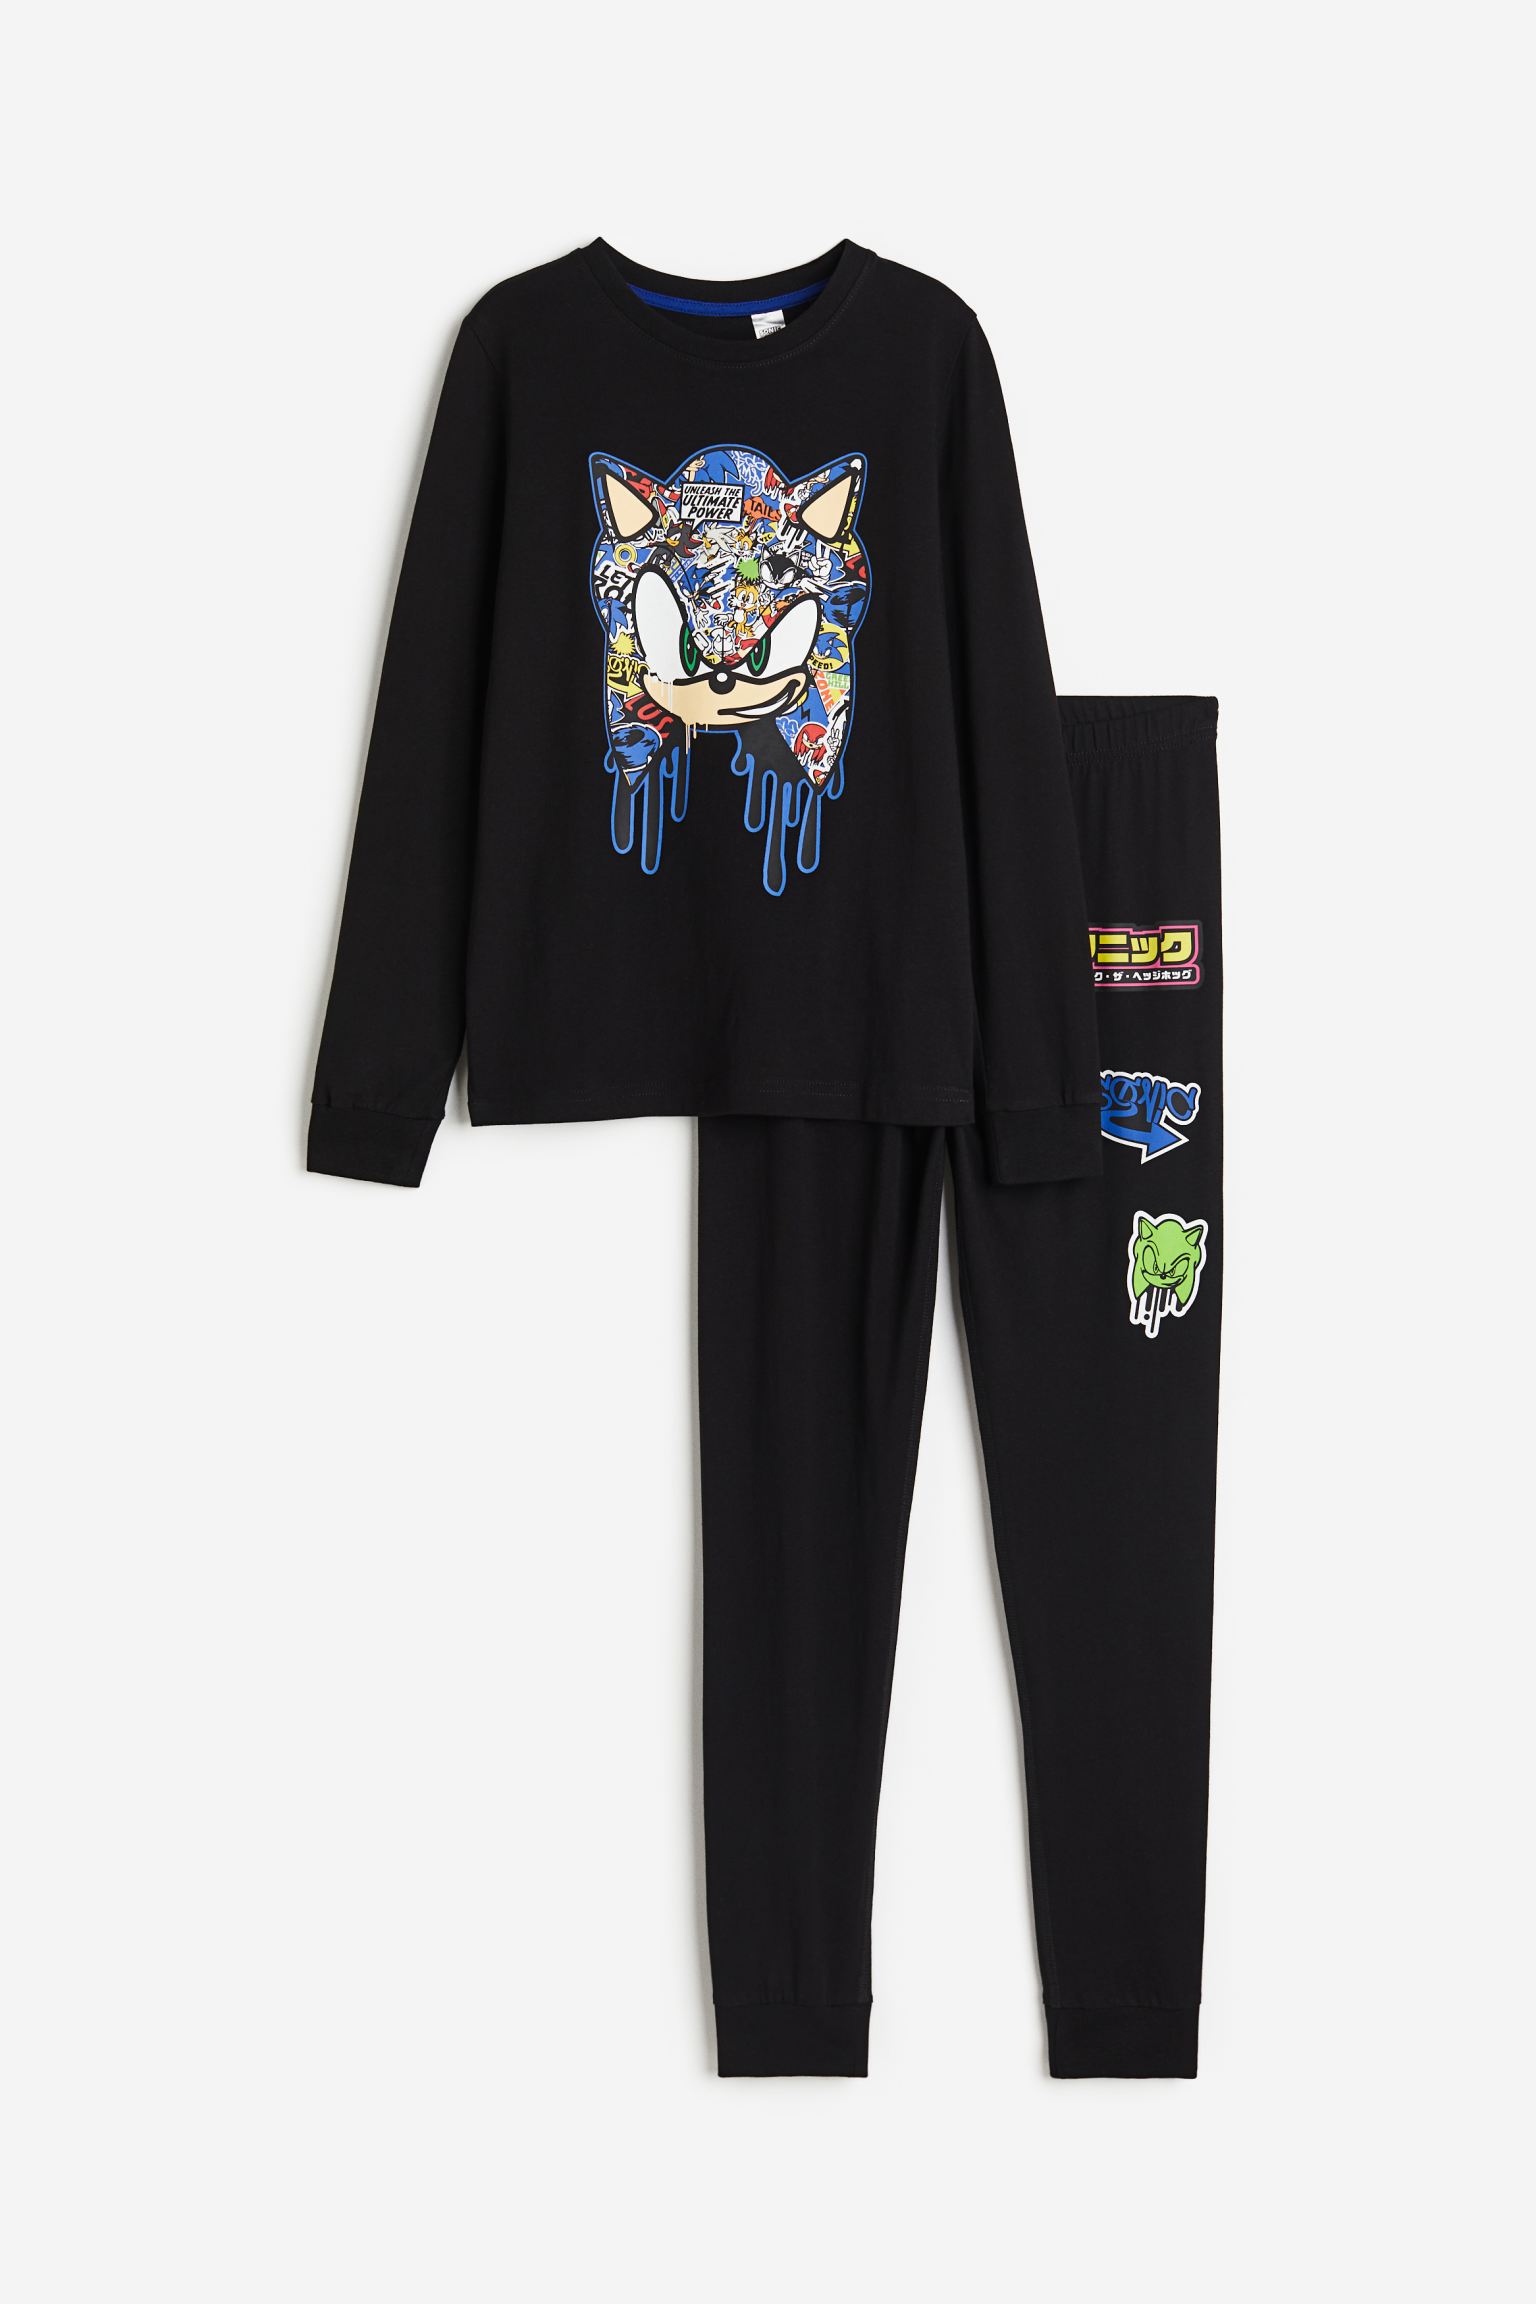 Пижамный комплект H&M Kids Jersey Sonic the Hedgehog, 2 предмета, черный пижама let s go брюки с манжетами рукава с манжетами манжеты пояс на резинке размер 110 бирюзовый